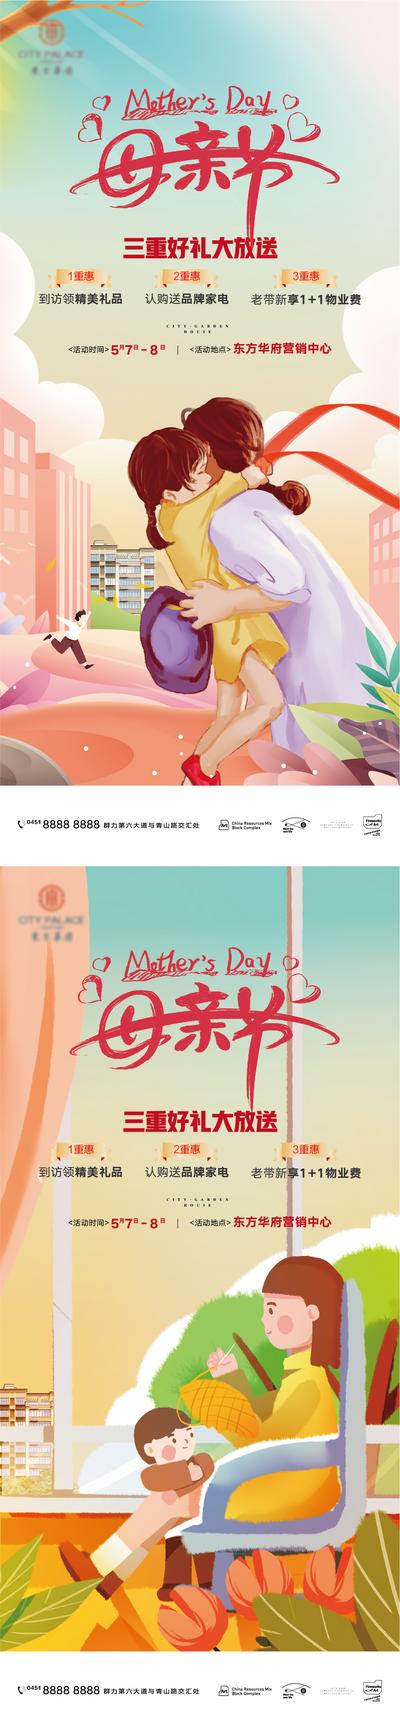 【南门网】海报 公历节日 房地产 母亲节 母爱 三重礼 插画 系列